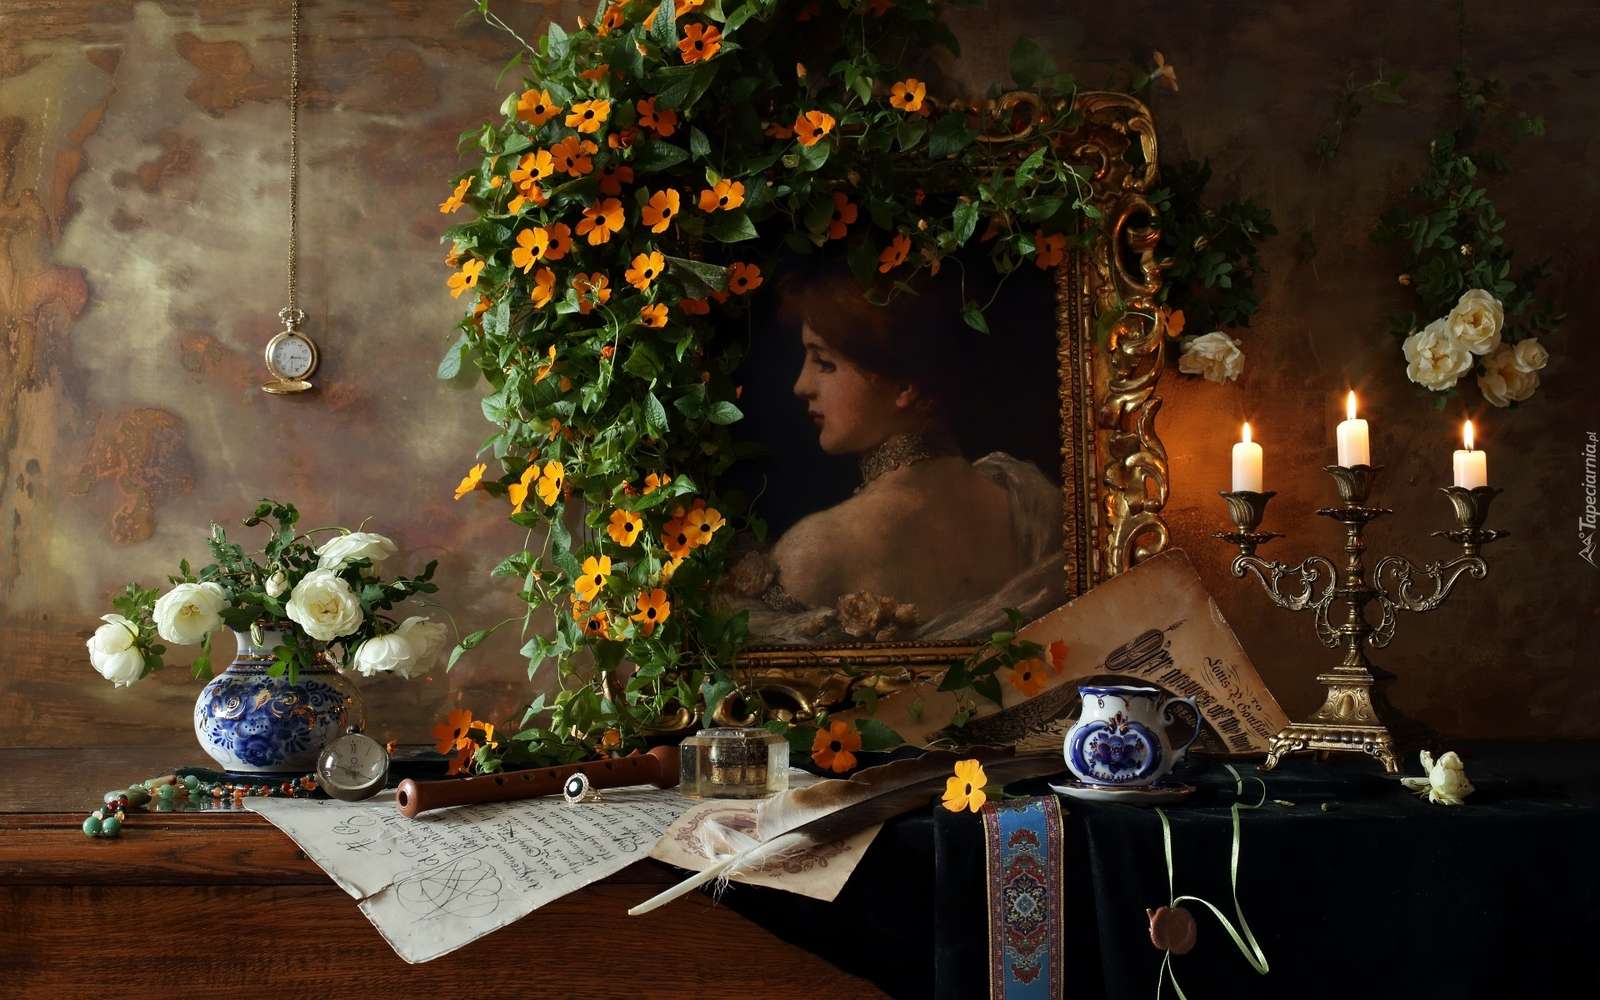 ローソク足と花の横にある女性の写真 ジグソーパズルオンライン